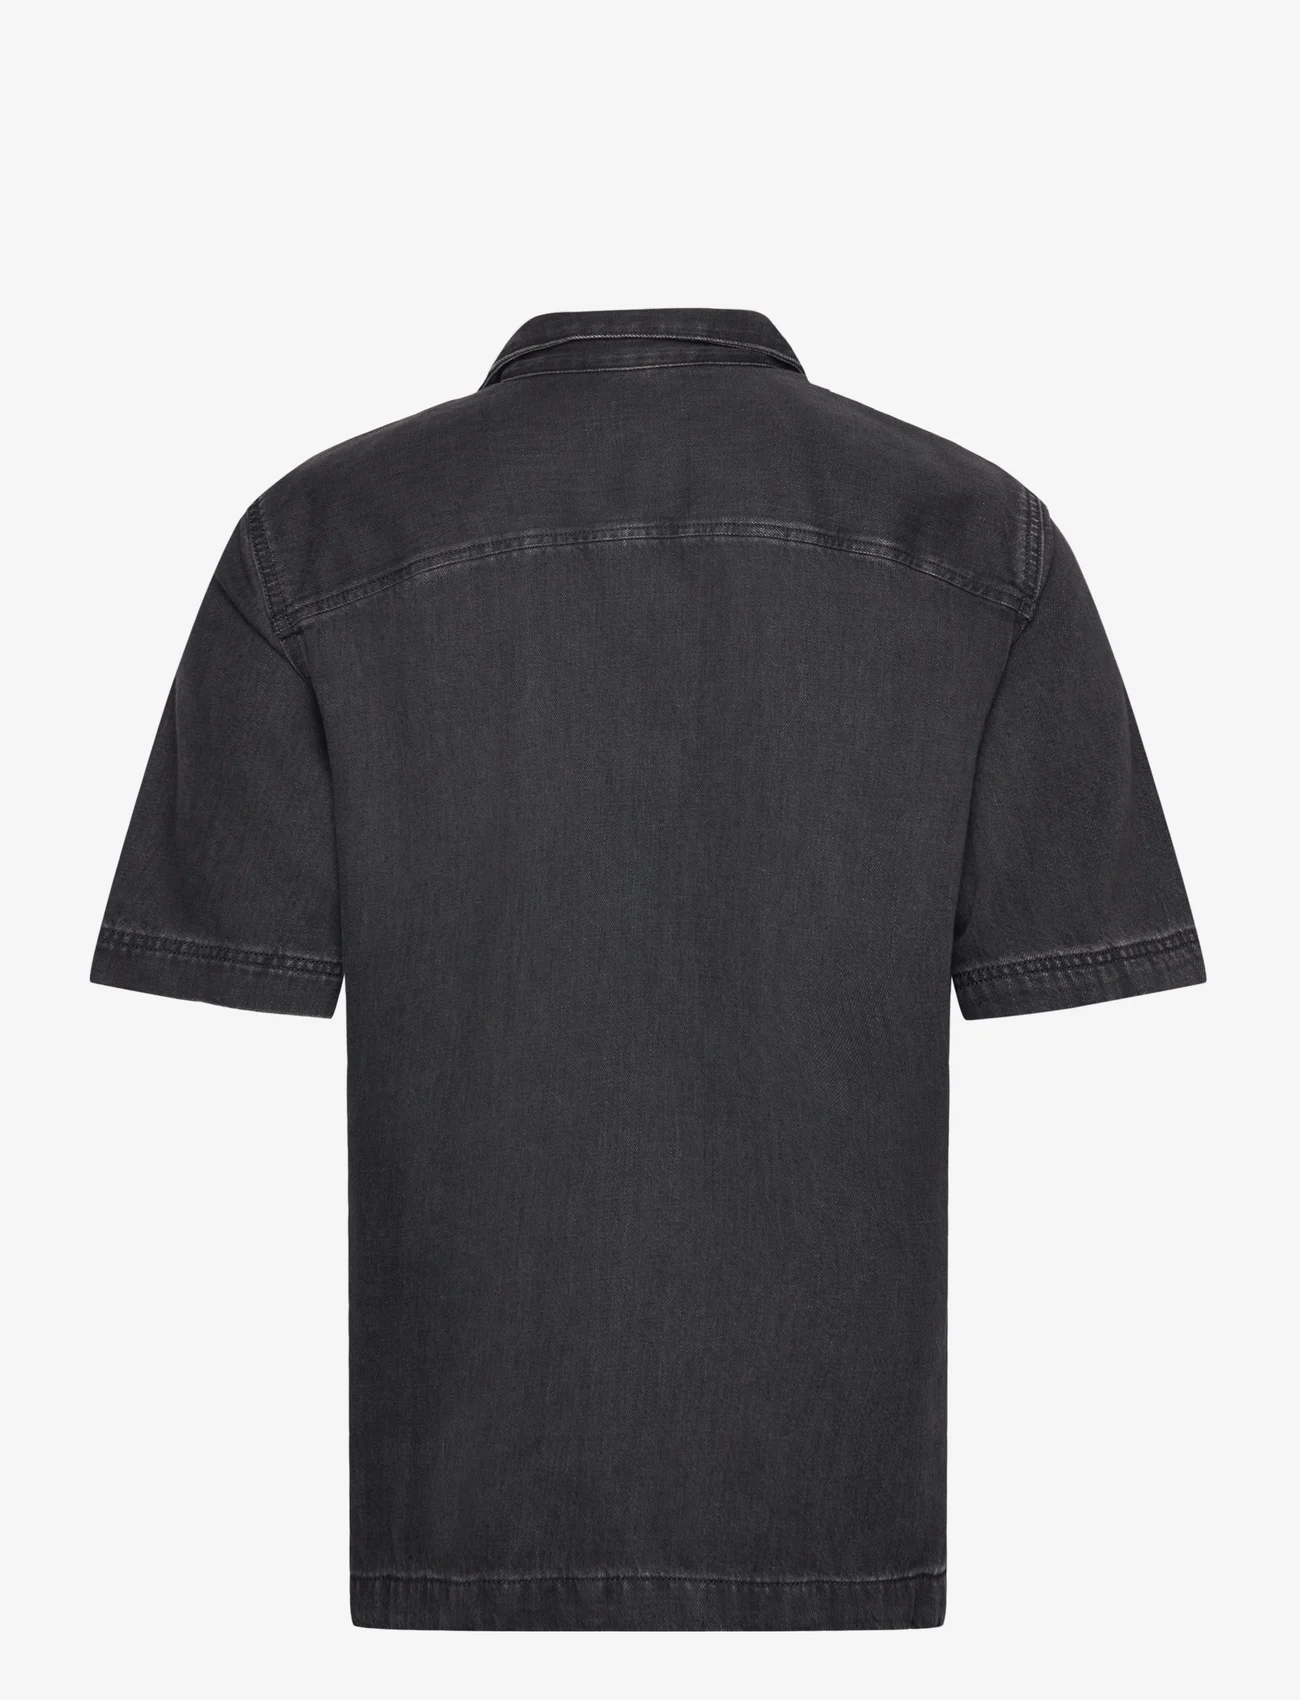 Diesel - D-PAROSHORT SHIRT - kortærmede t-shirts - black/denim - 1